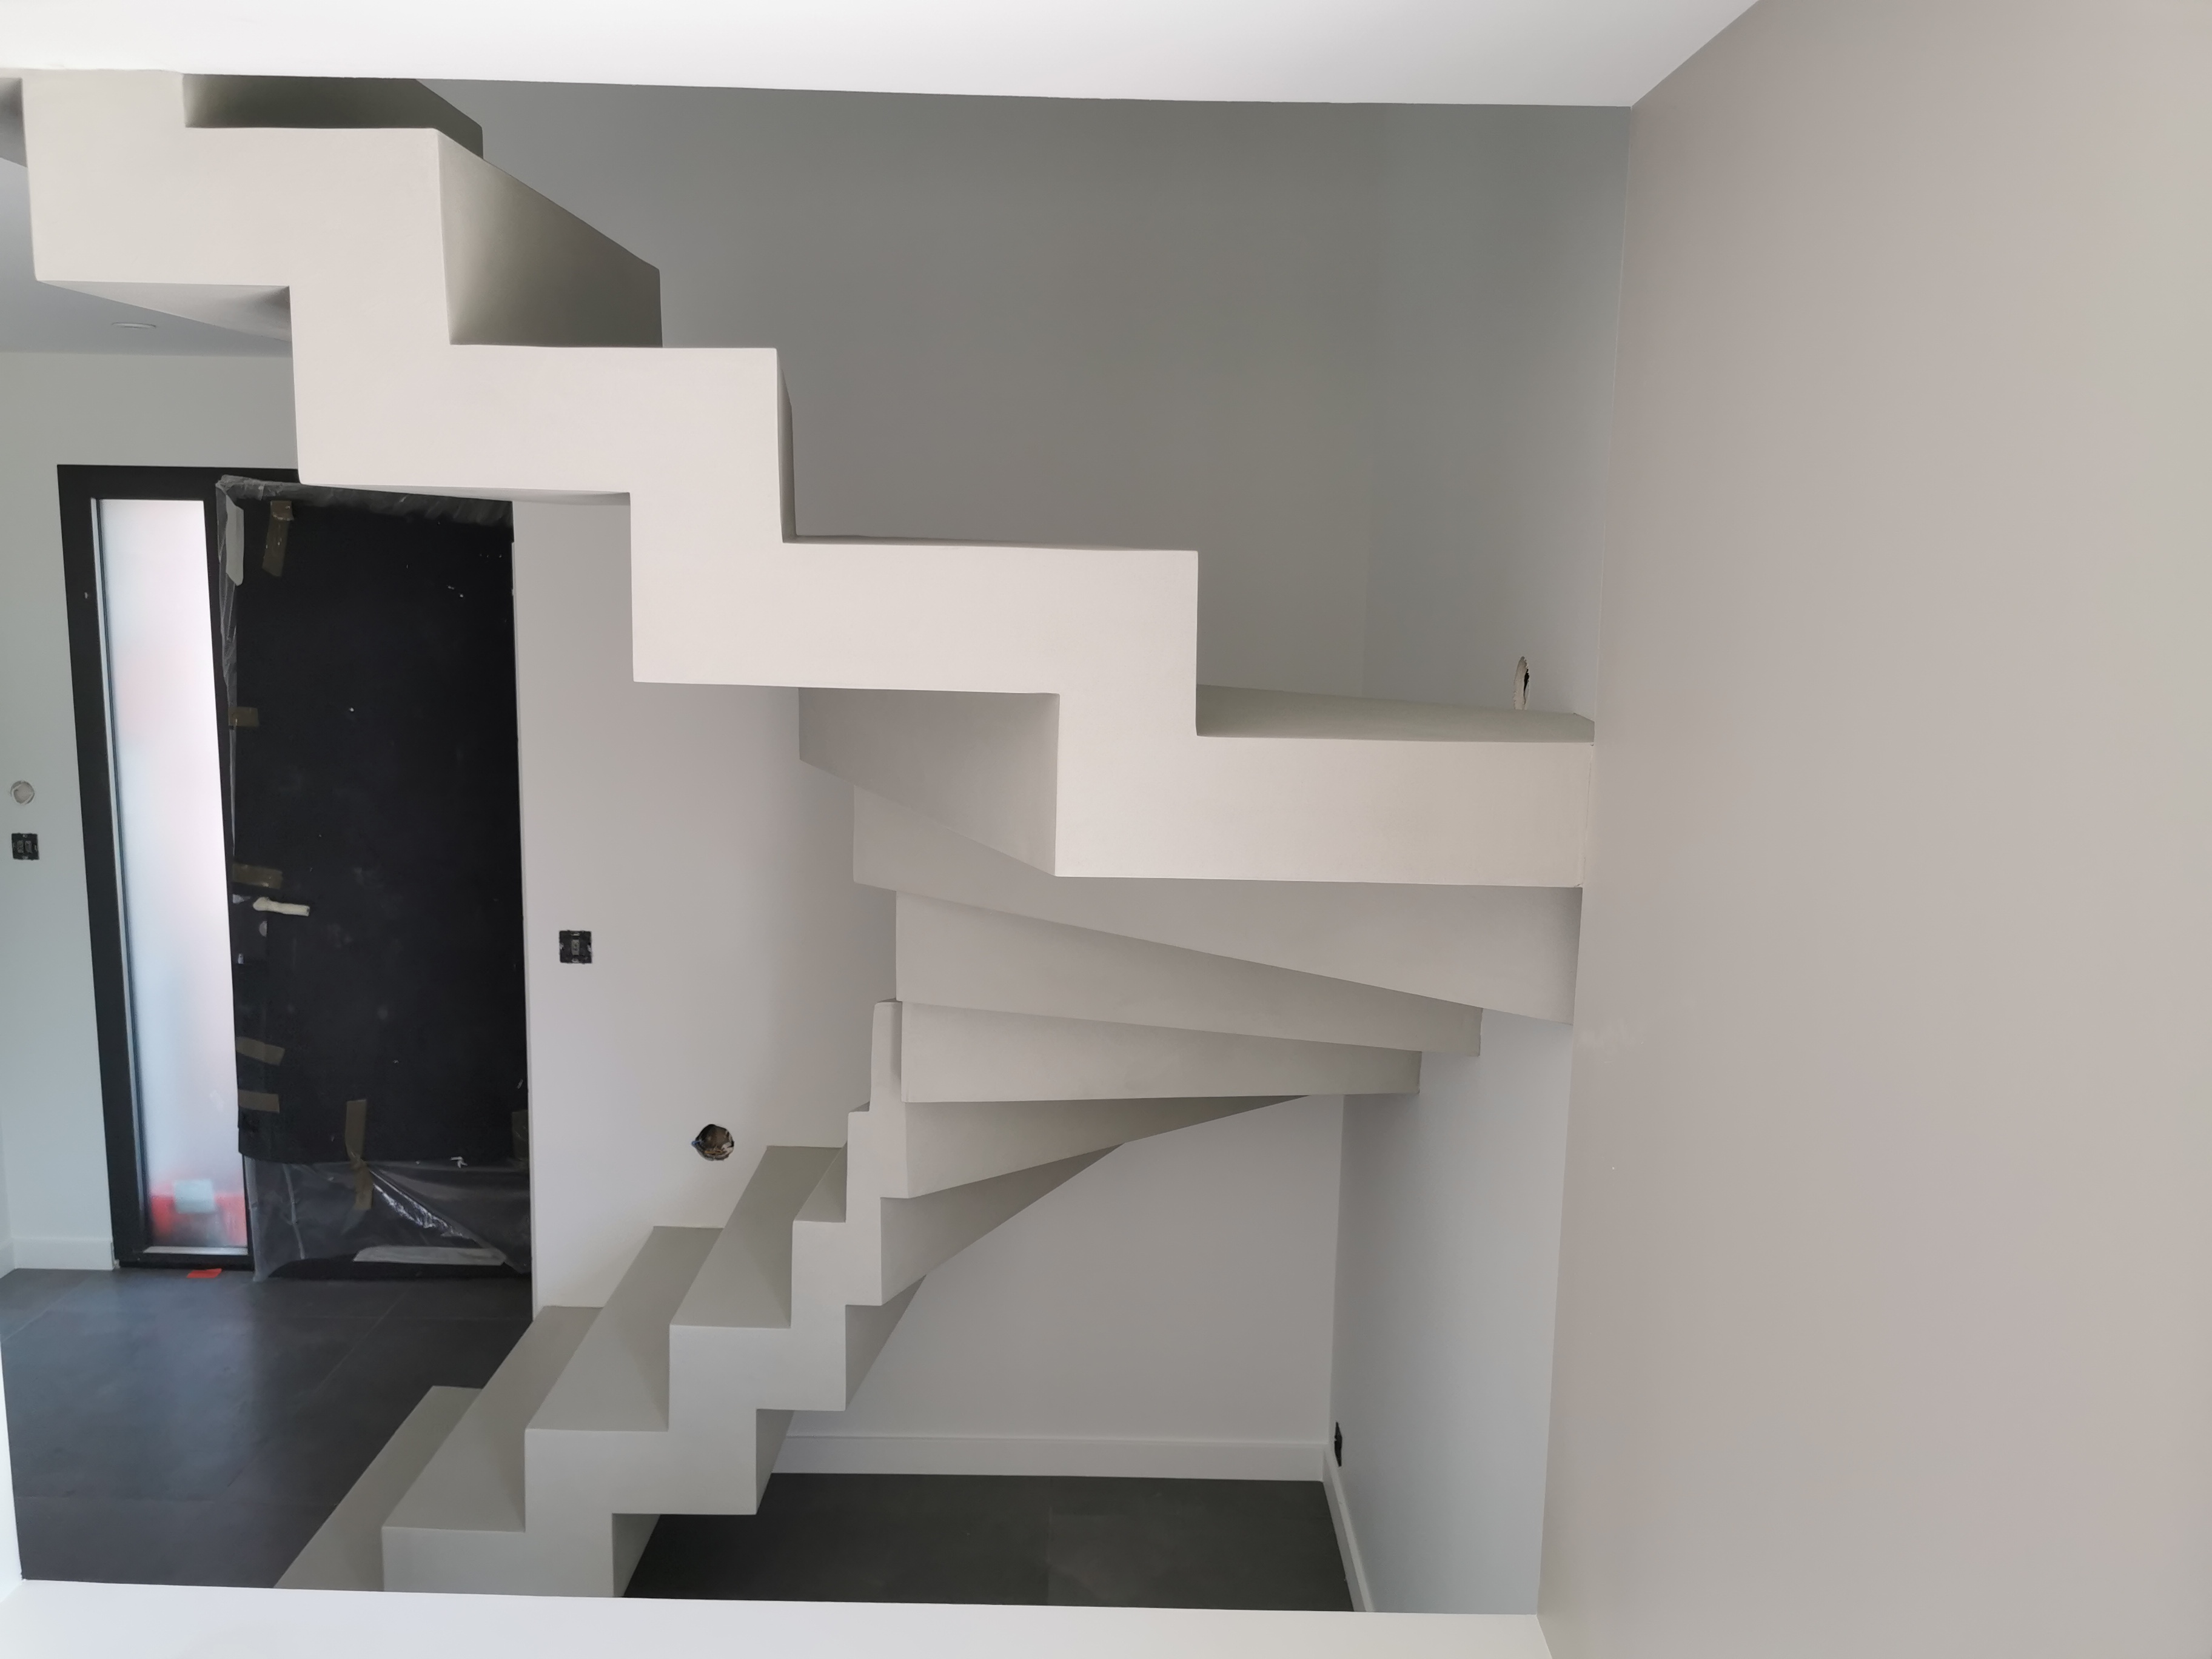 magnifique escalier crémaillère deux quart balancé en béton ciré vernis mat couleur poivre blanc Mérignac à Bordeaux en Gironde en Nouvelle Aquitaine pour un particulier